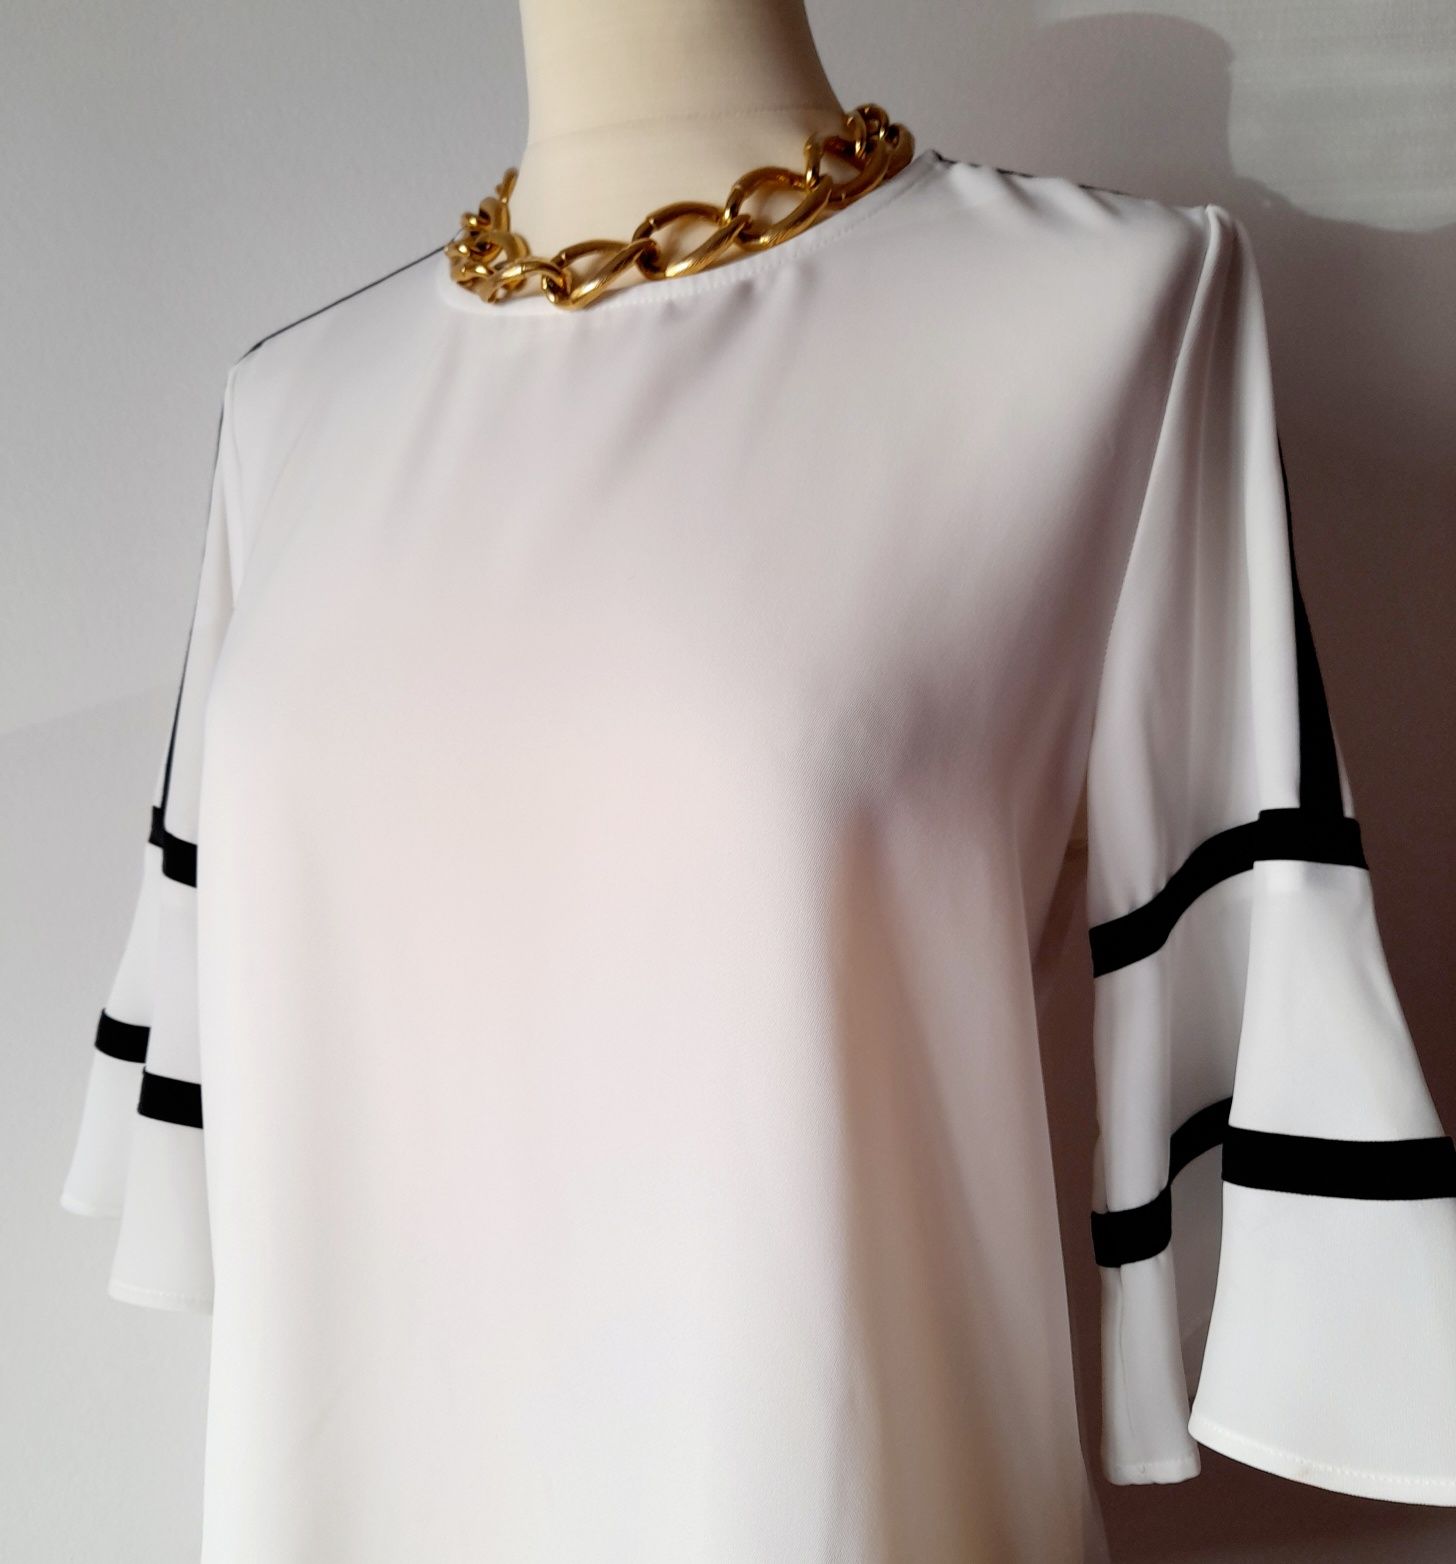 Blusa Calvin Klein branca, com detalhes a preto. Tamanho S